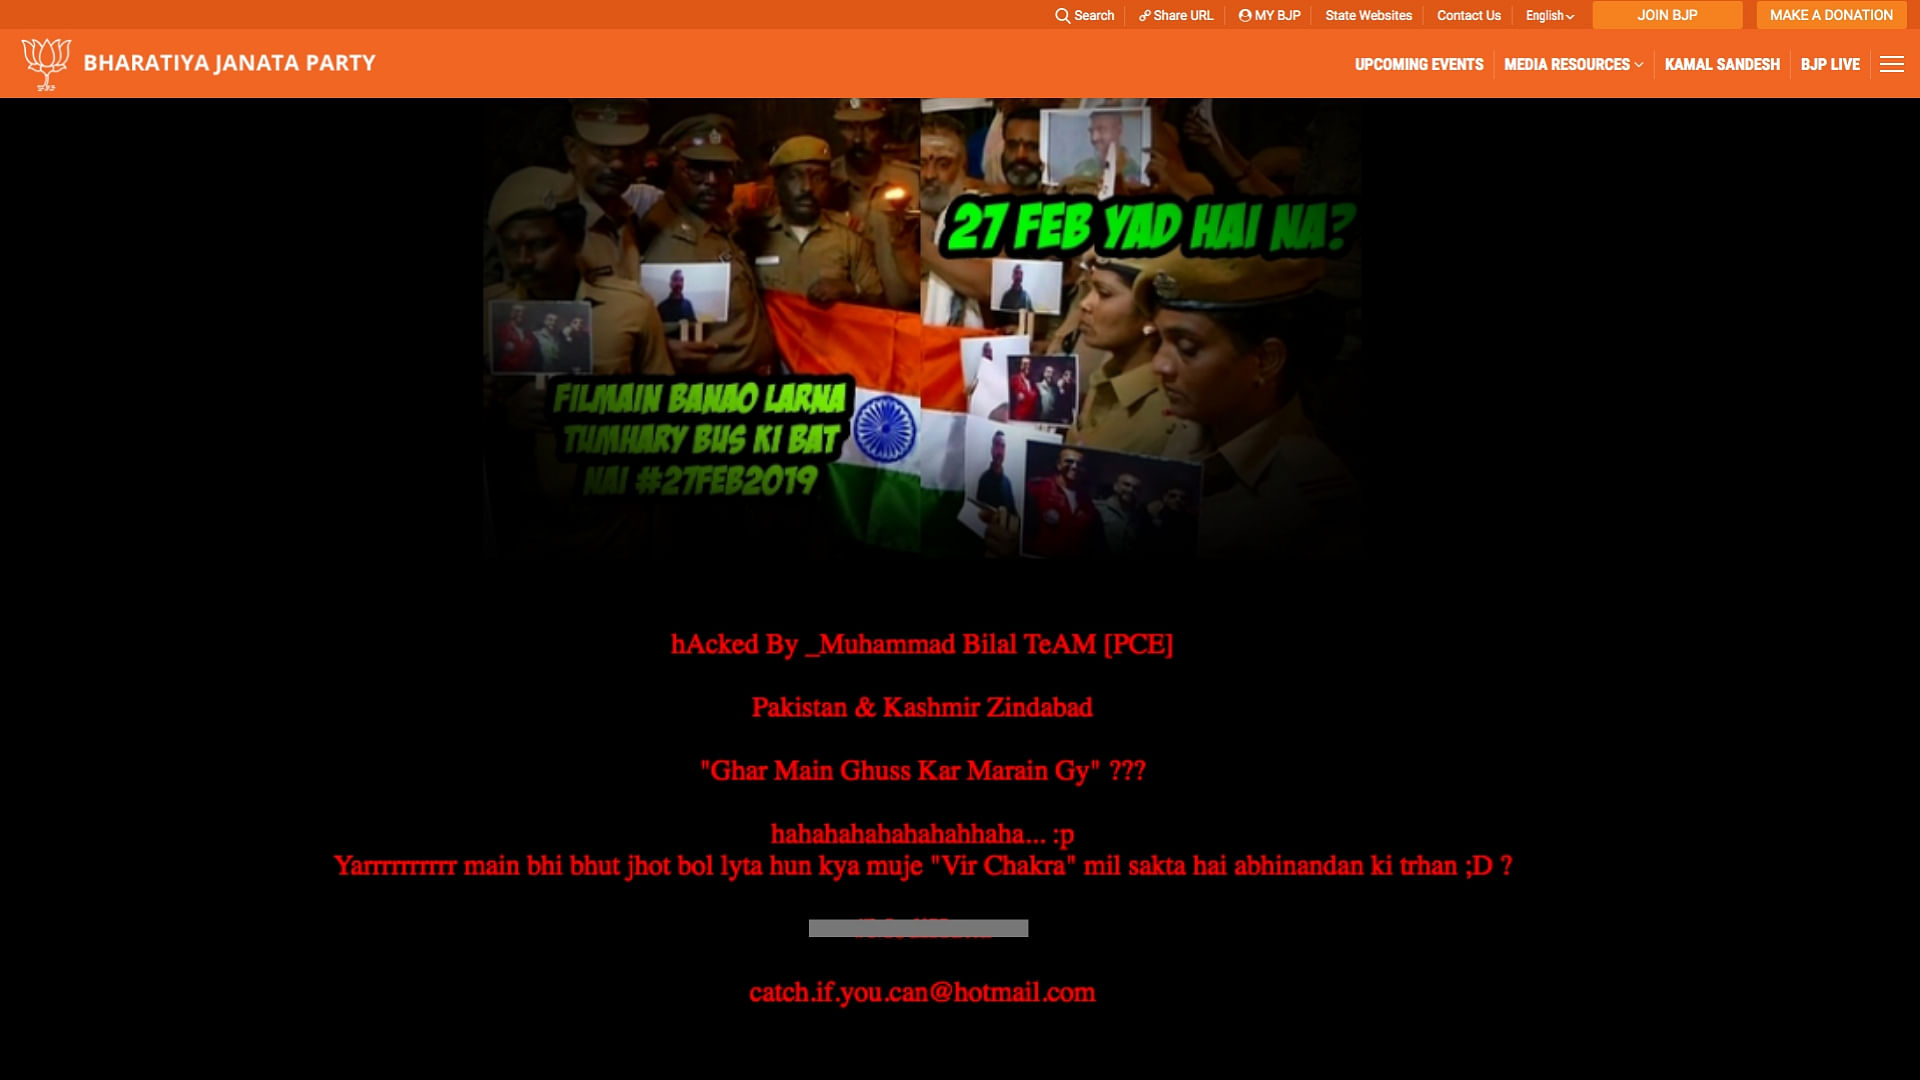 The BJP Delhi website hacked.